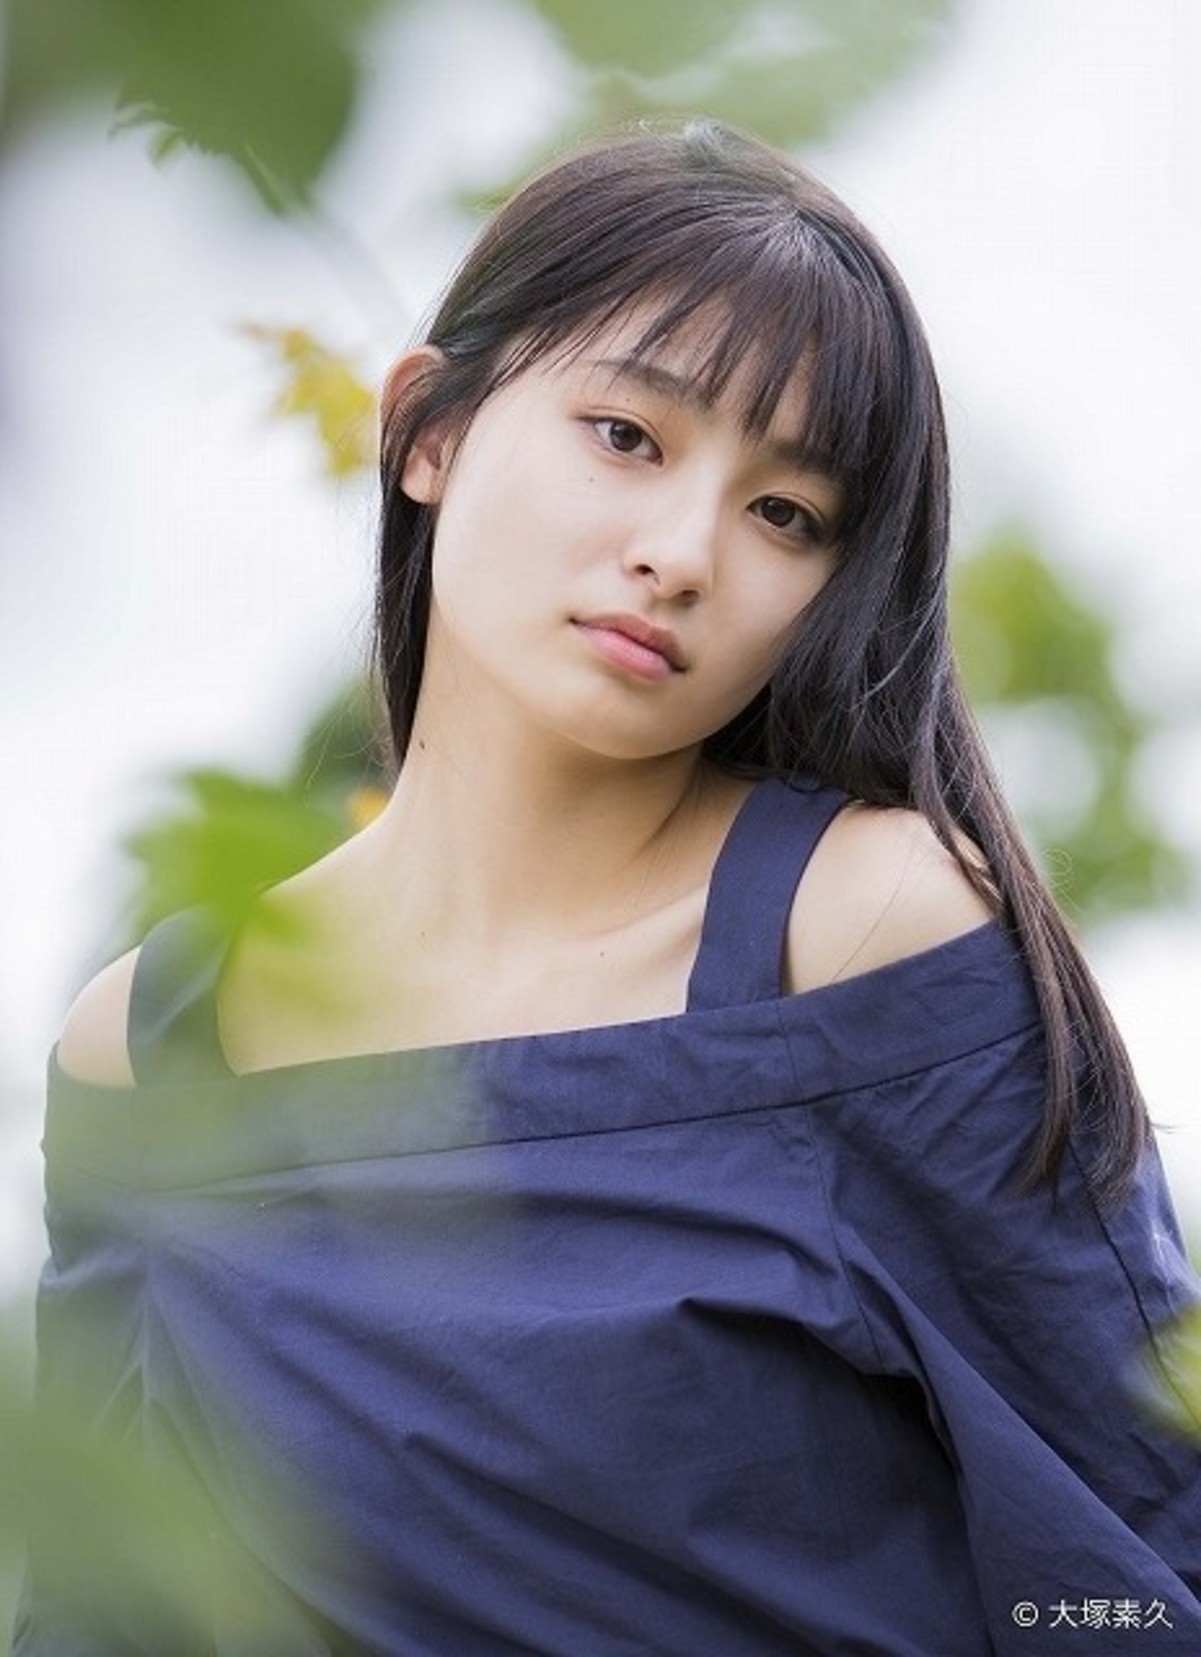 ブレイク必至の注目女優 吉川愛 20歳を迎える2019年に向け思うこと 映画ニュース 映画 Com